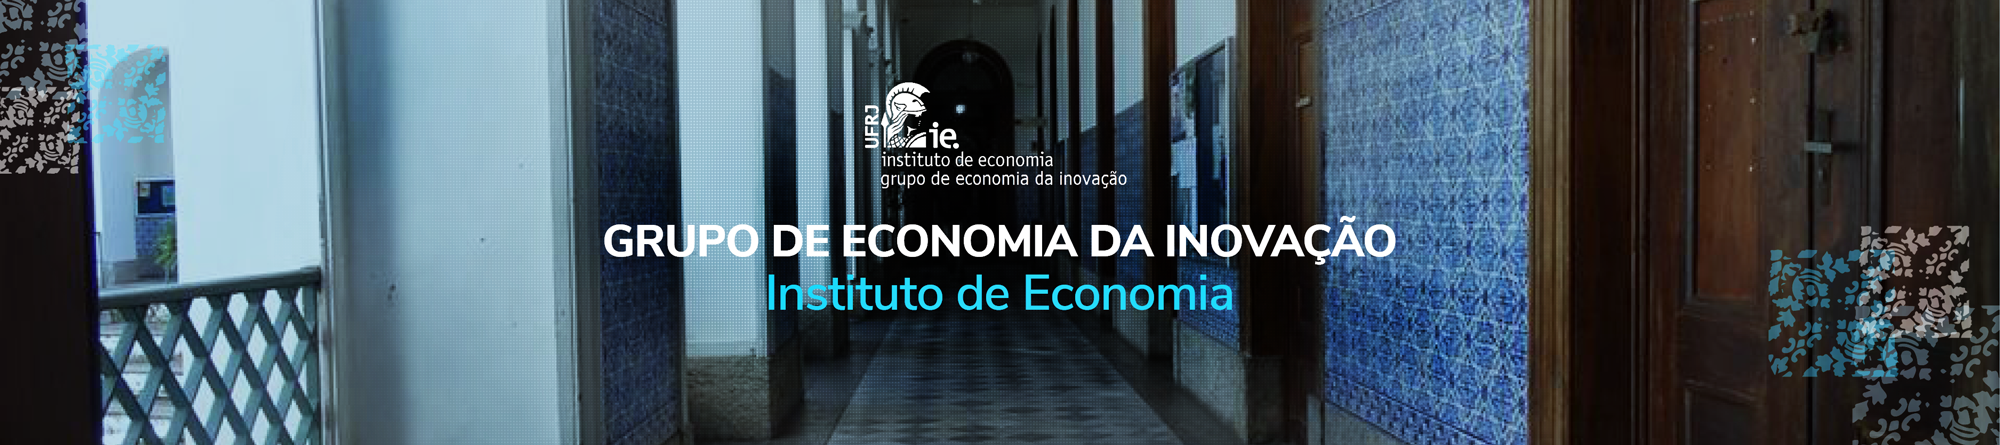 Instituto de Economia